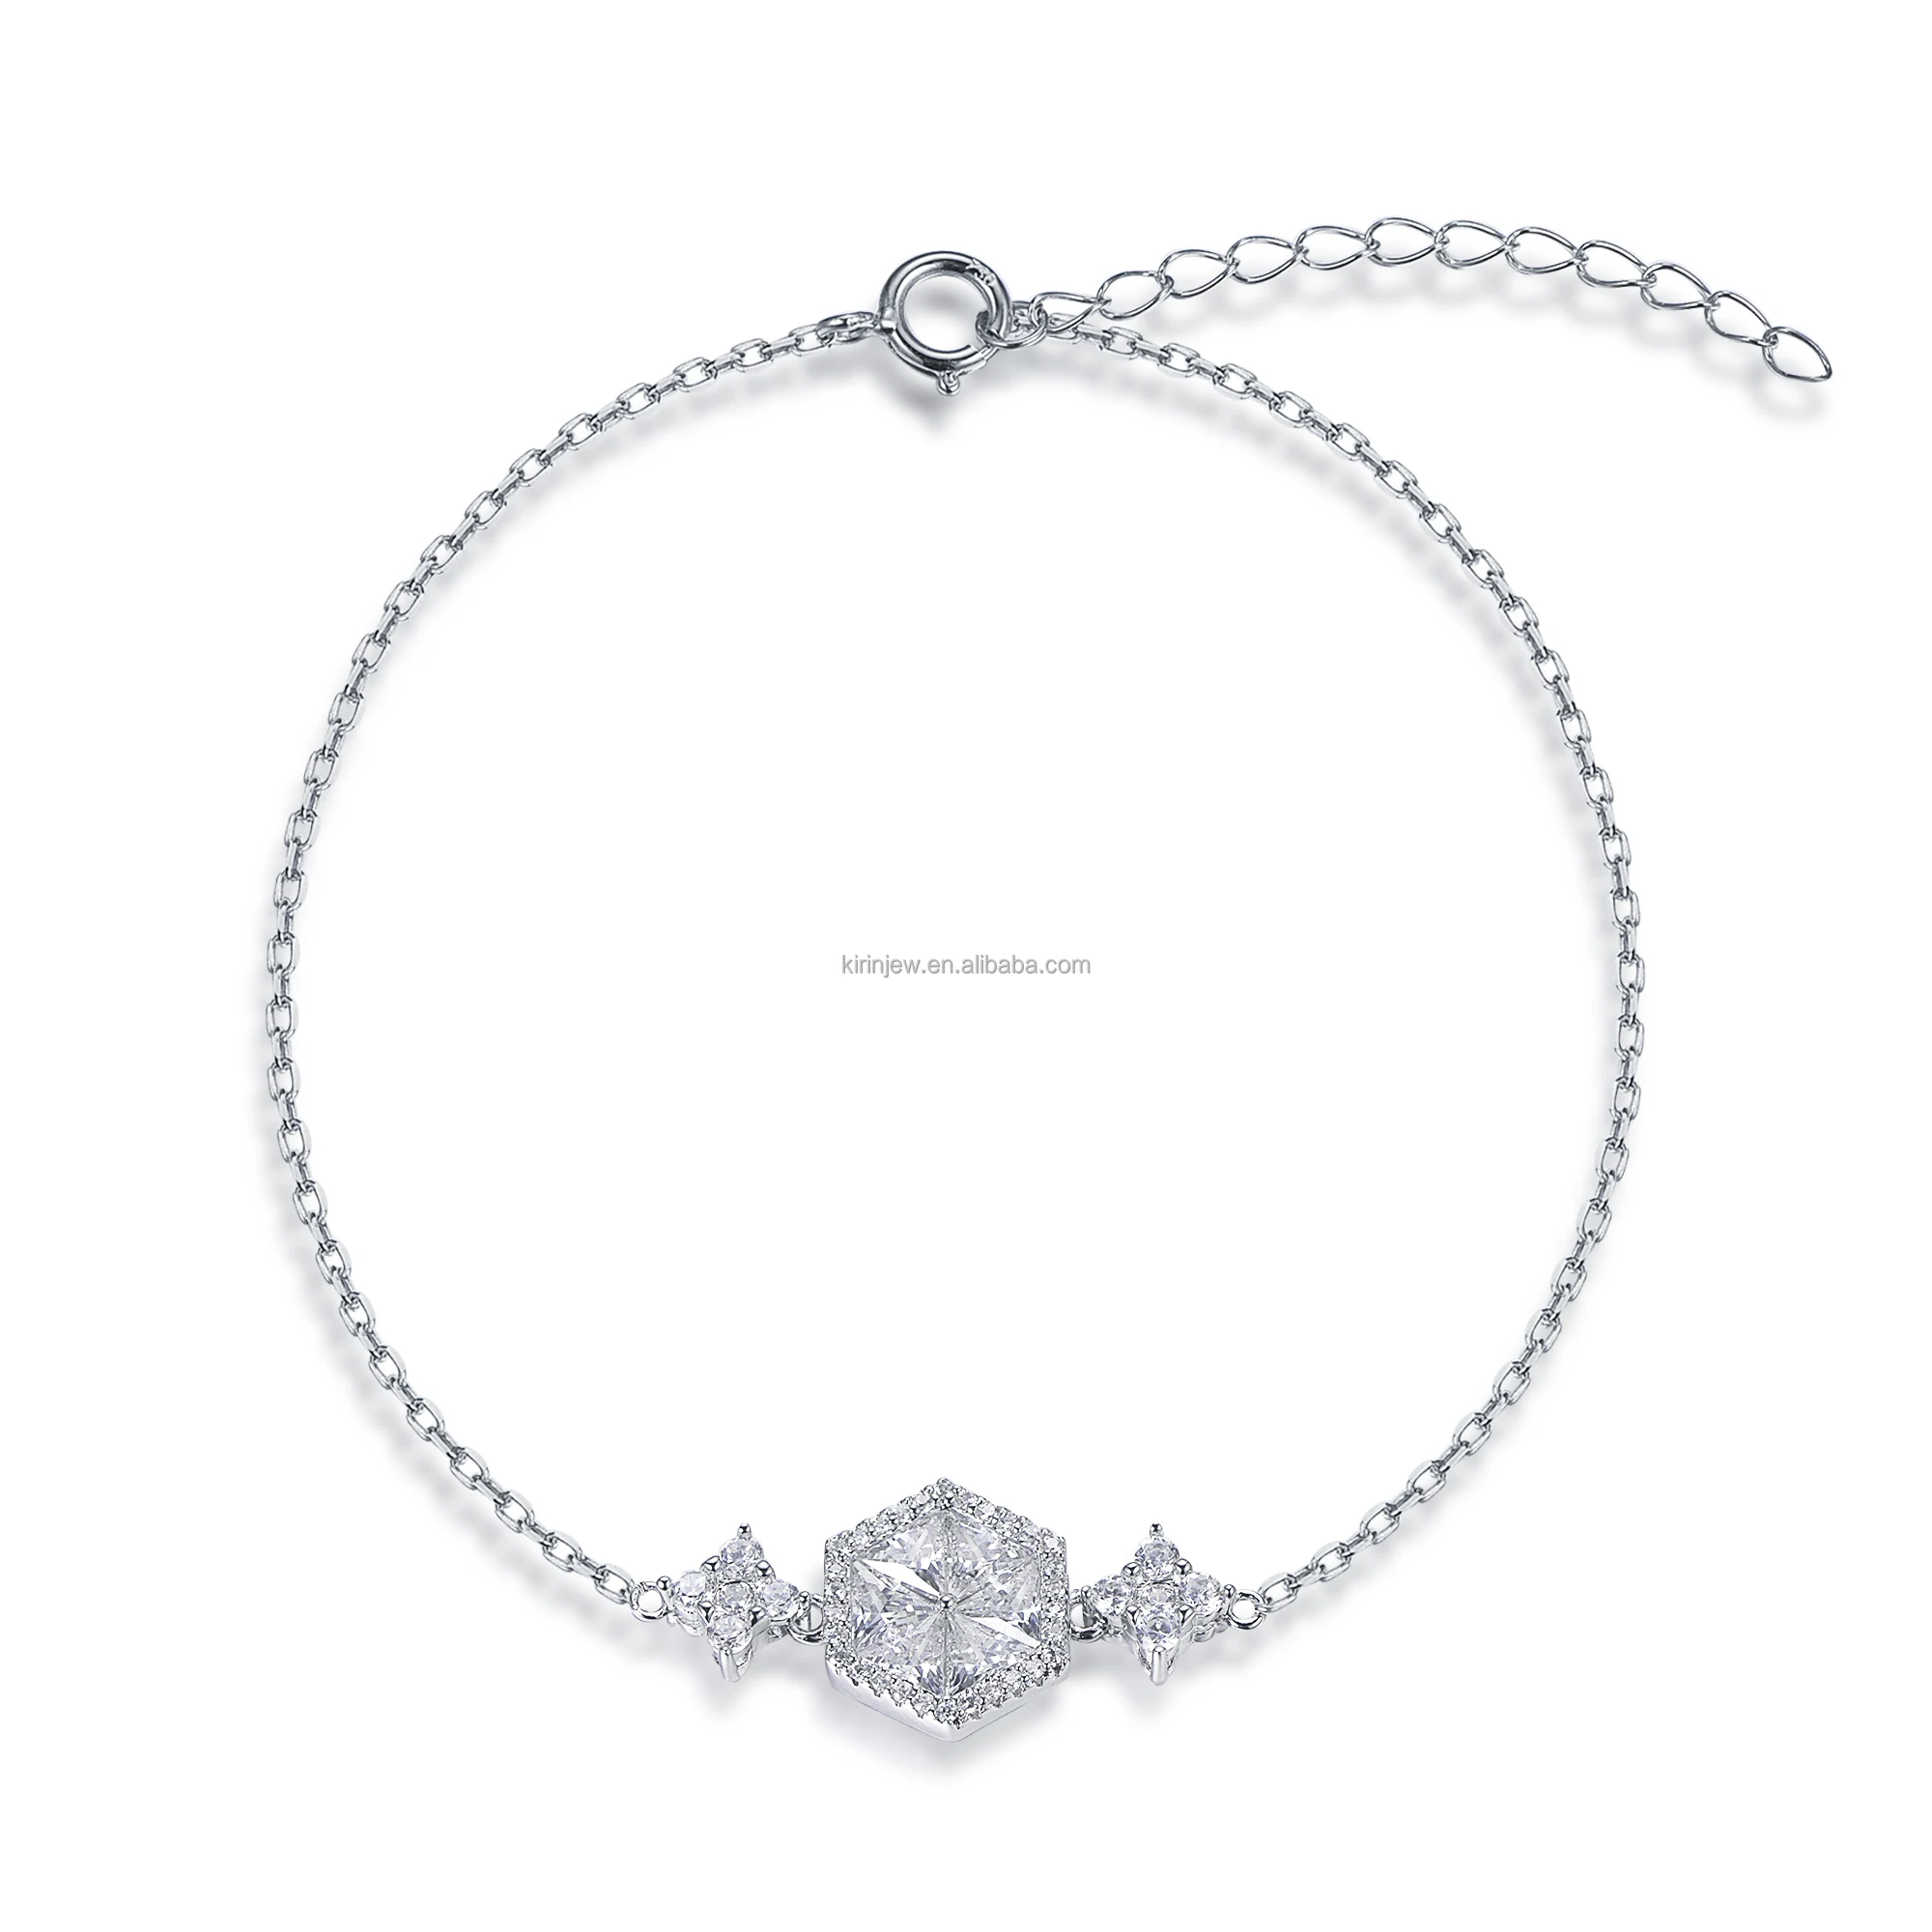 Factory Price Wholesale Crystal Bracelet Diamond Moissanite bracelet CZ Adjustable chain Bracelet Jewelry